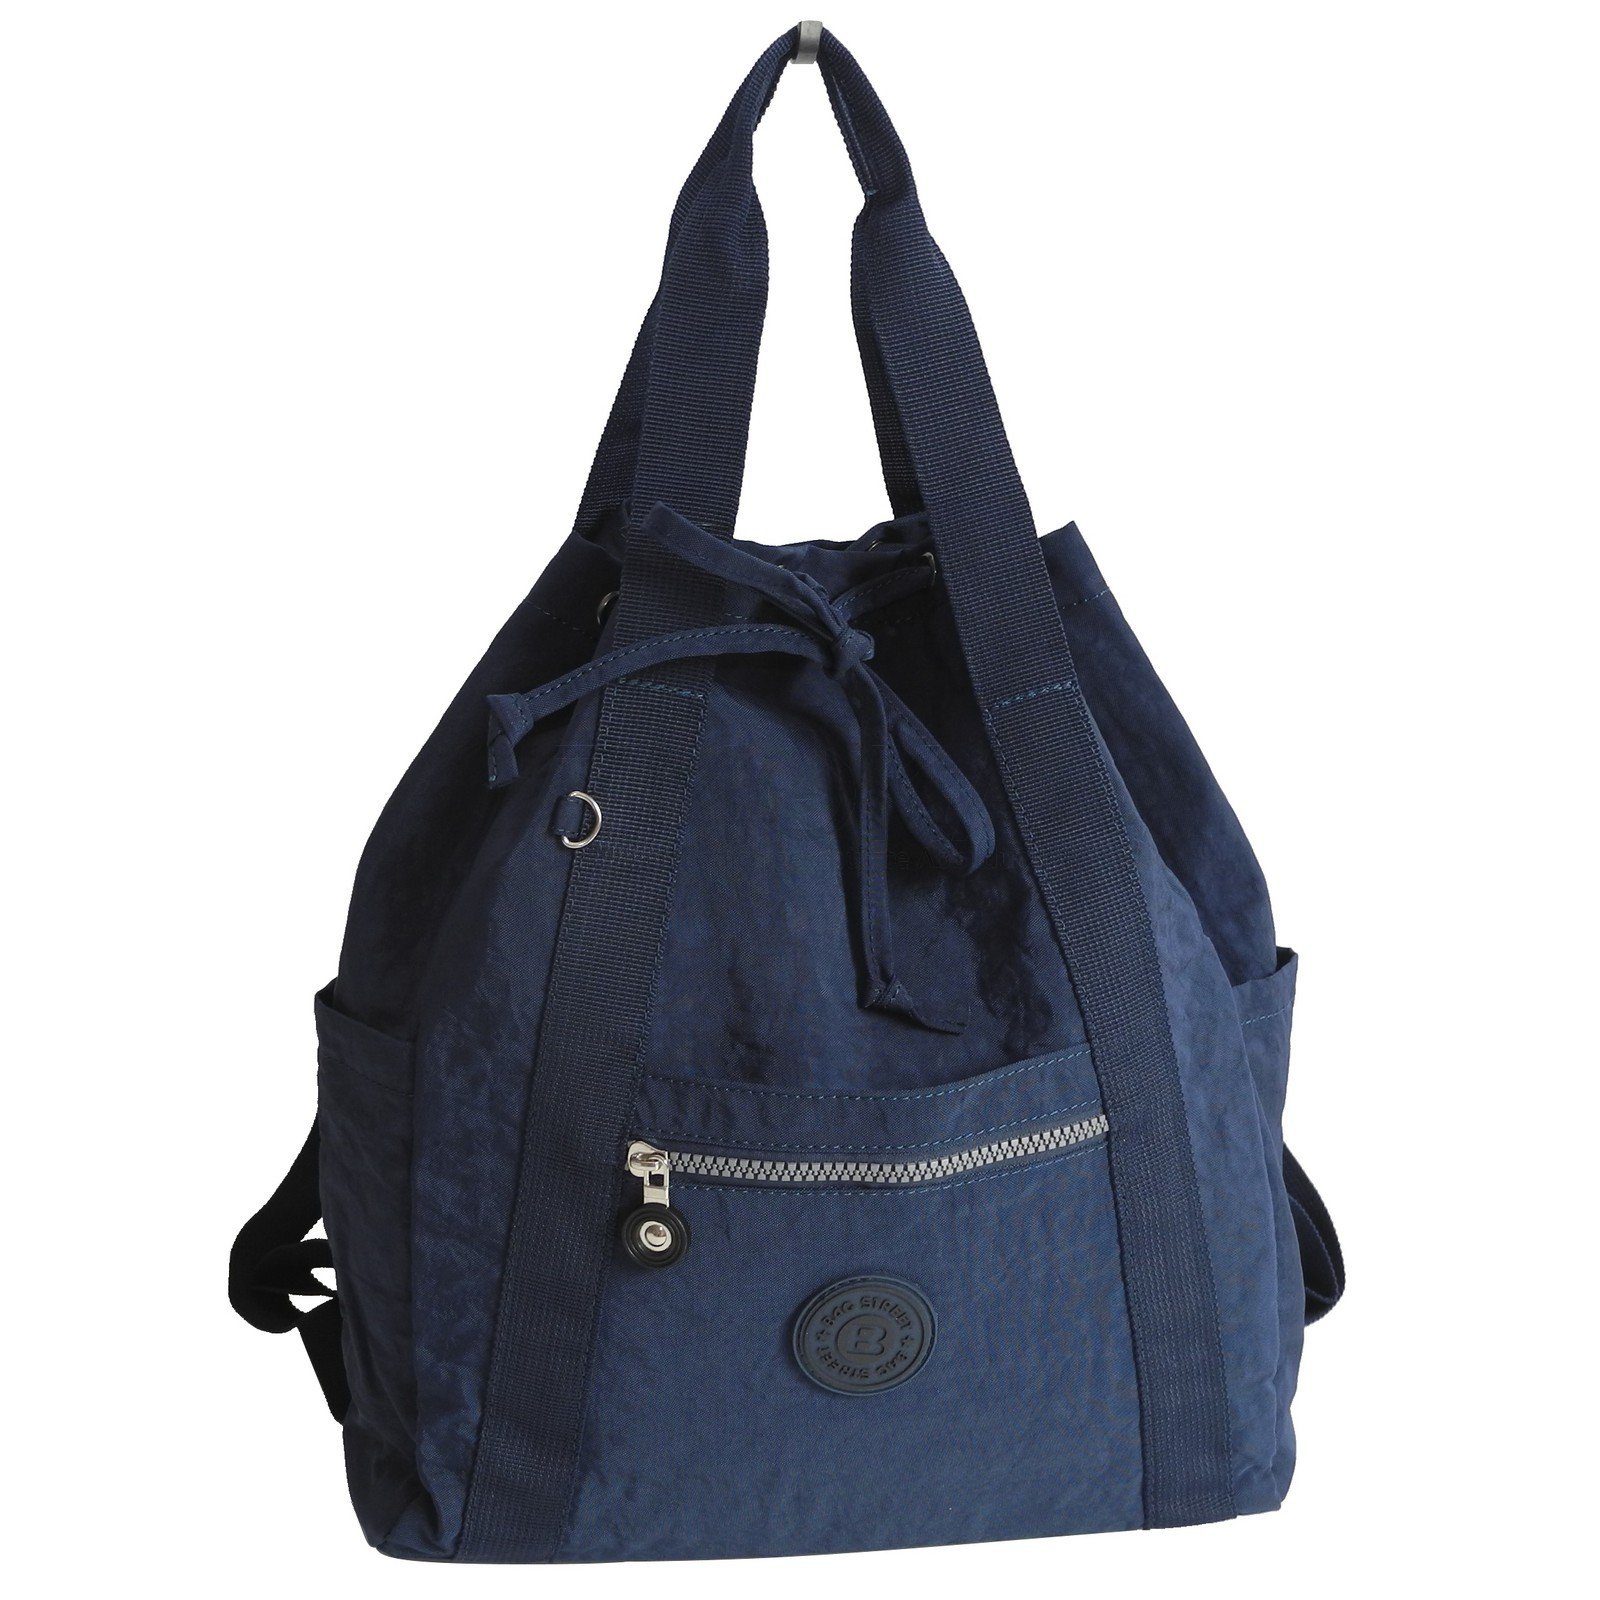 BAG STREET Cityrucksack Bag Street - leichte Damen Rucksackhandtasche